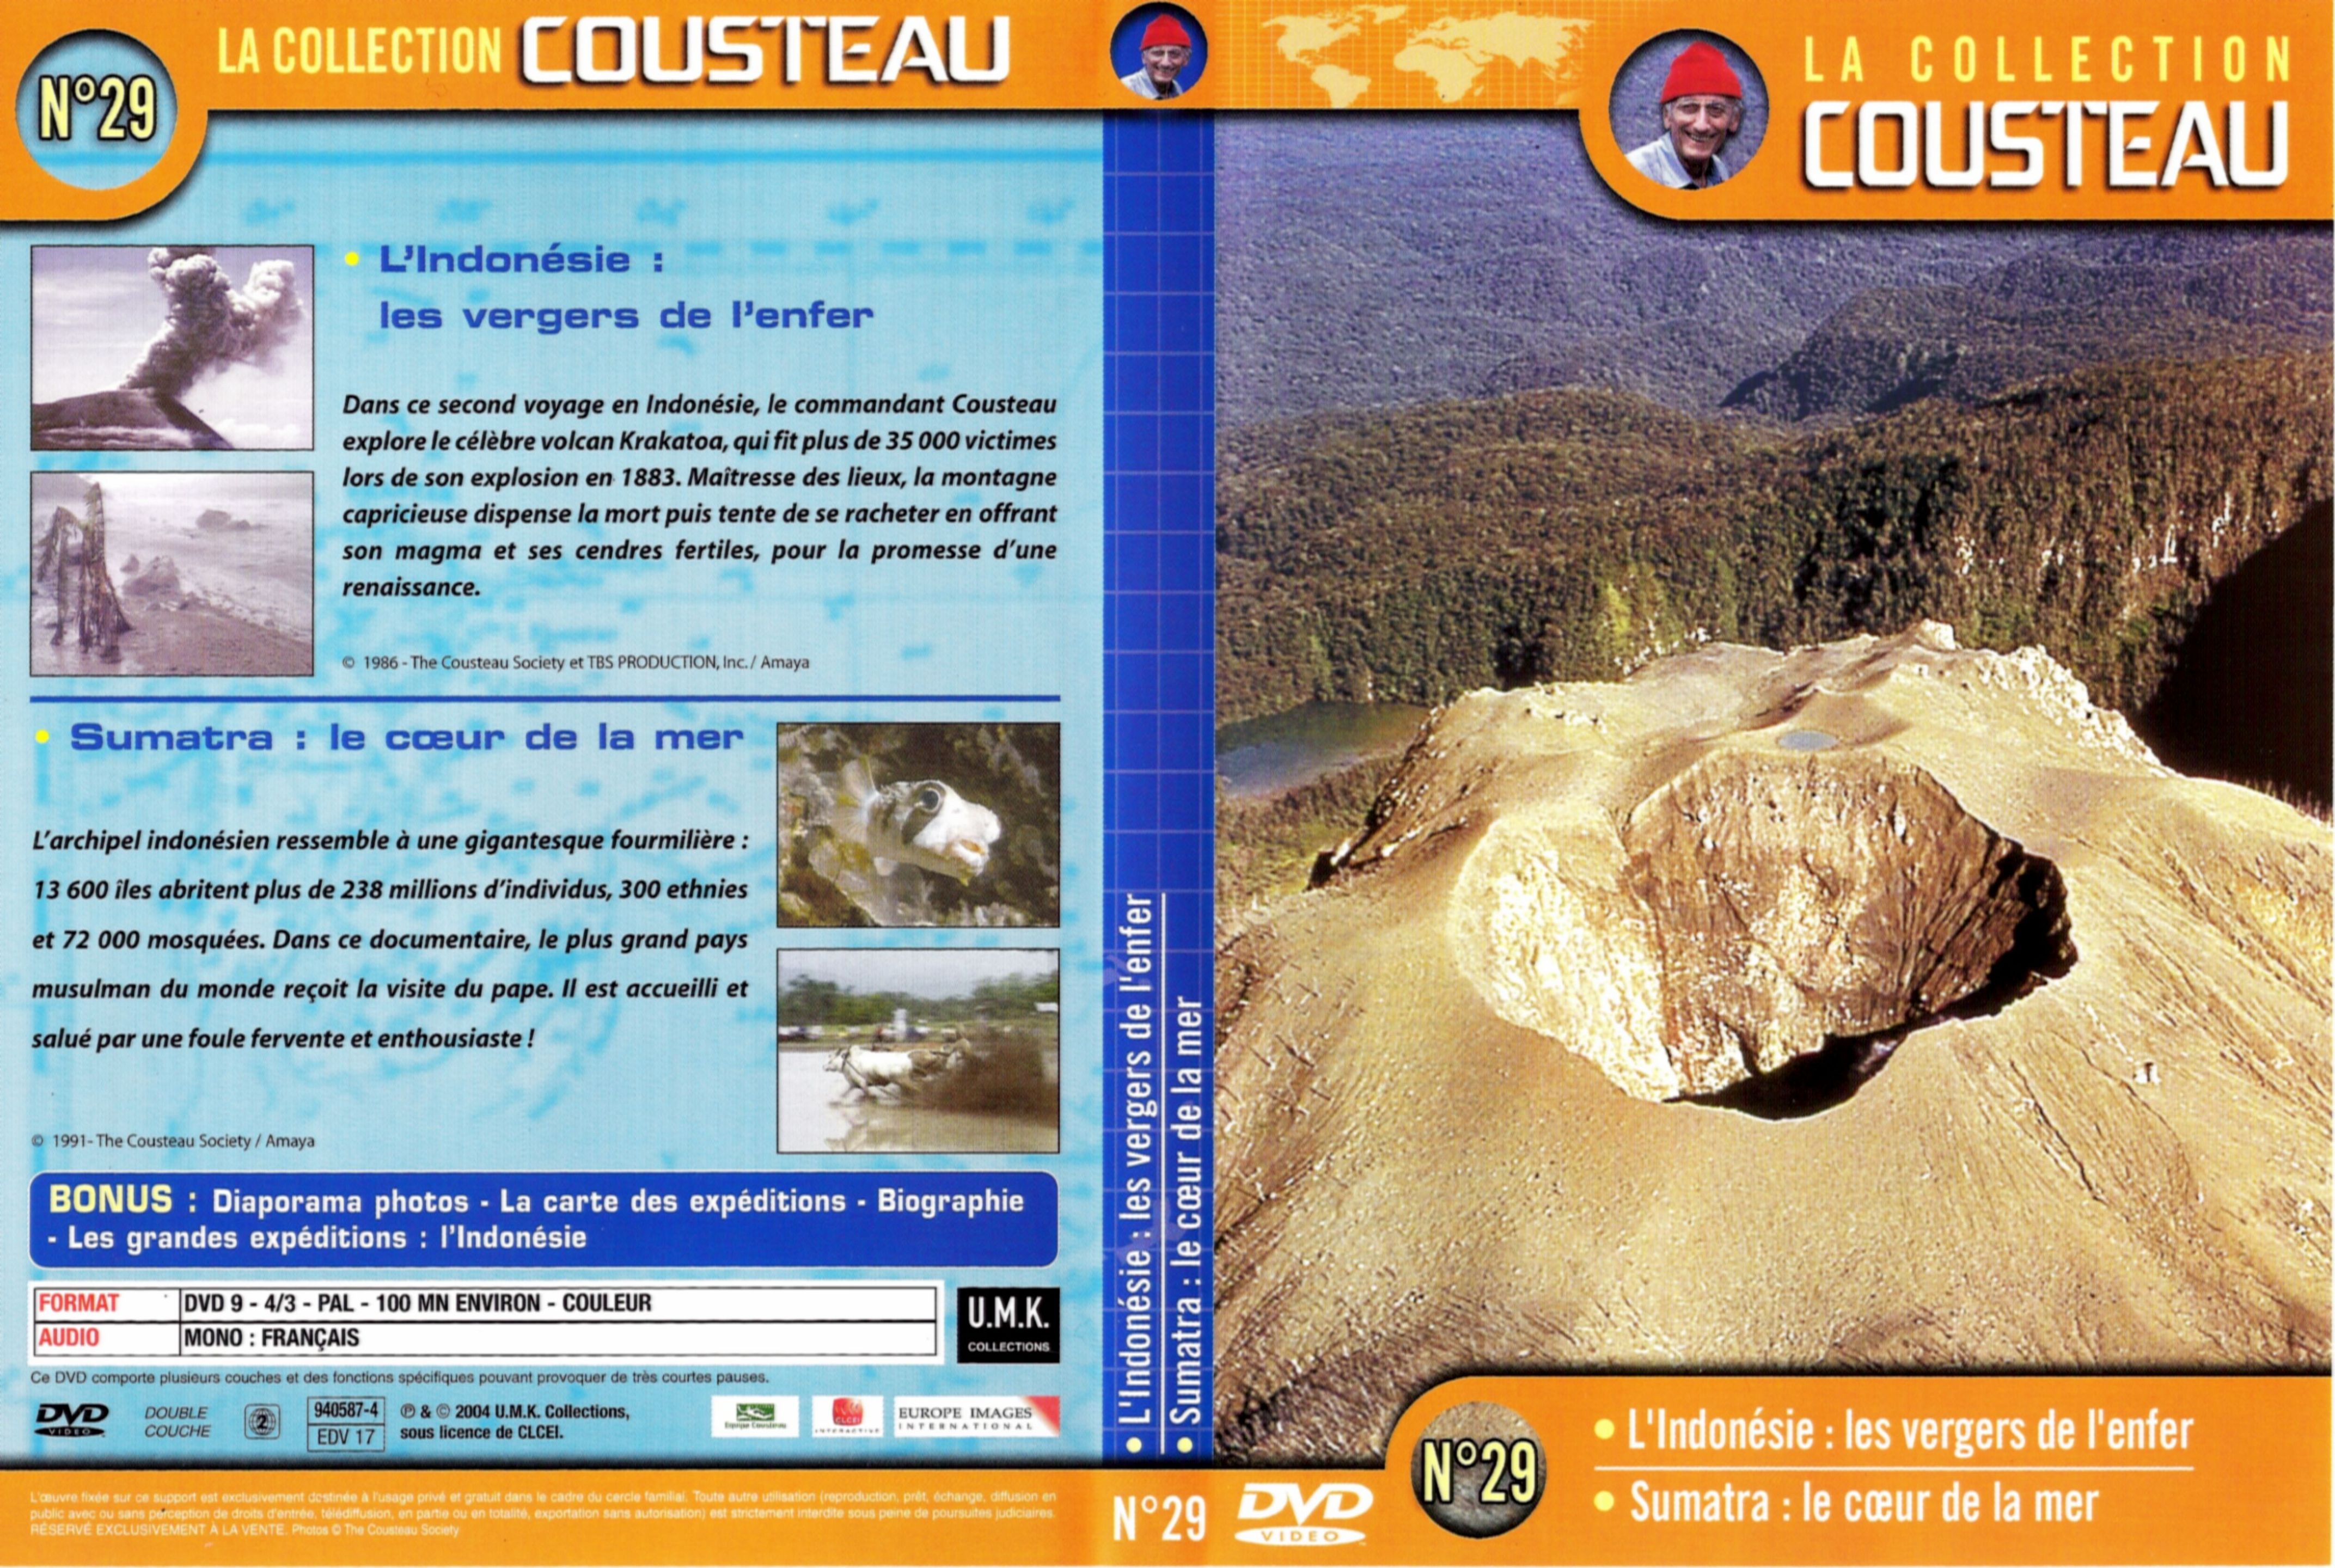 Jaquette DVD Cousteau Collection vol 29